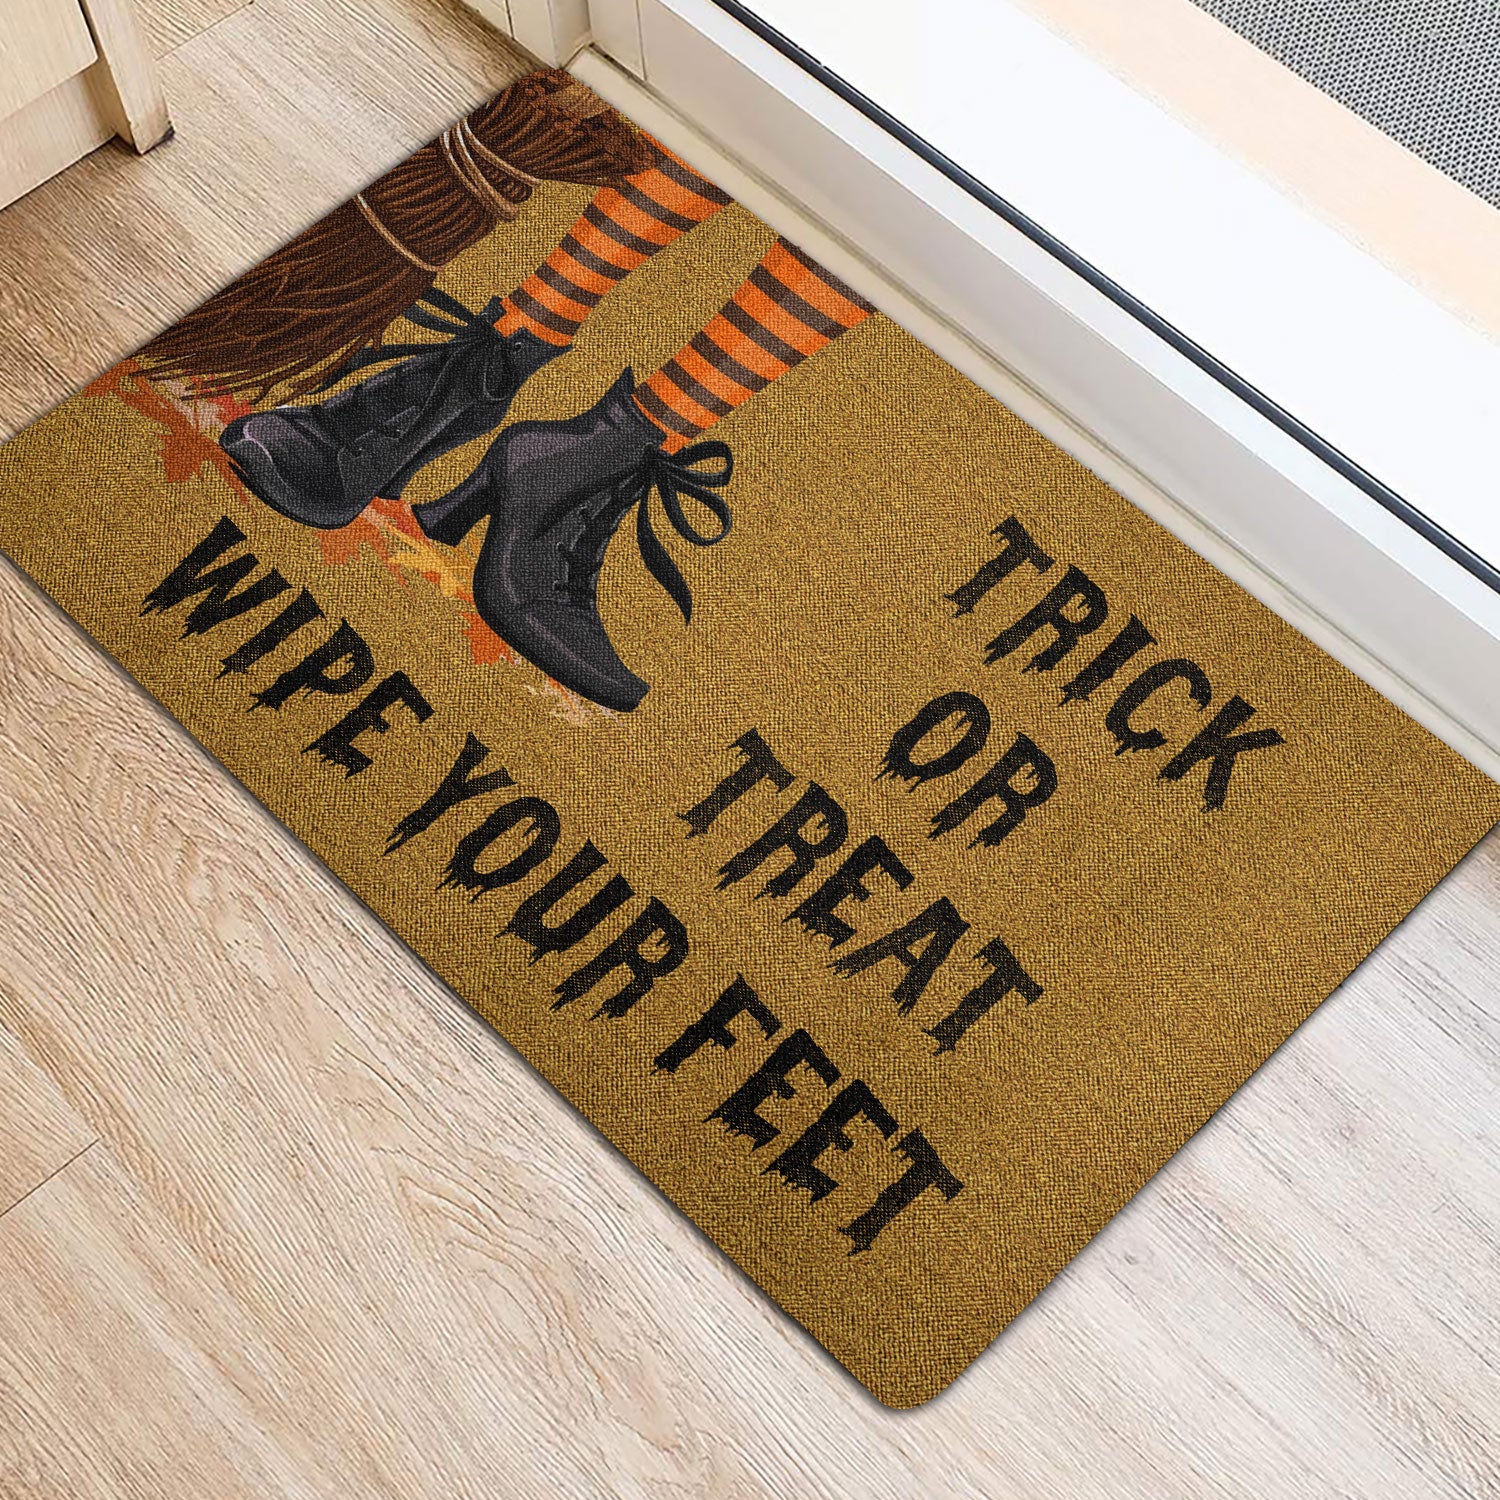 Ohaprints-Doormat-Outdoor-Indoor-Witch-Wicca-Trick-Or-Treat-Wipe-Your-Feet-Happy-Halloween-Rubber-Door-Mat-1941-